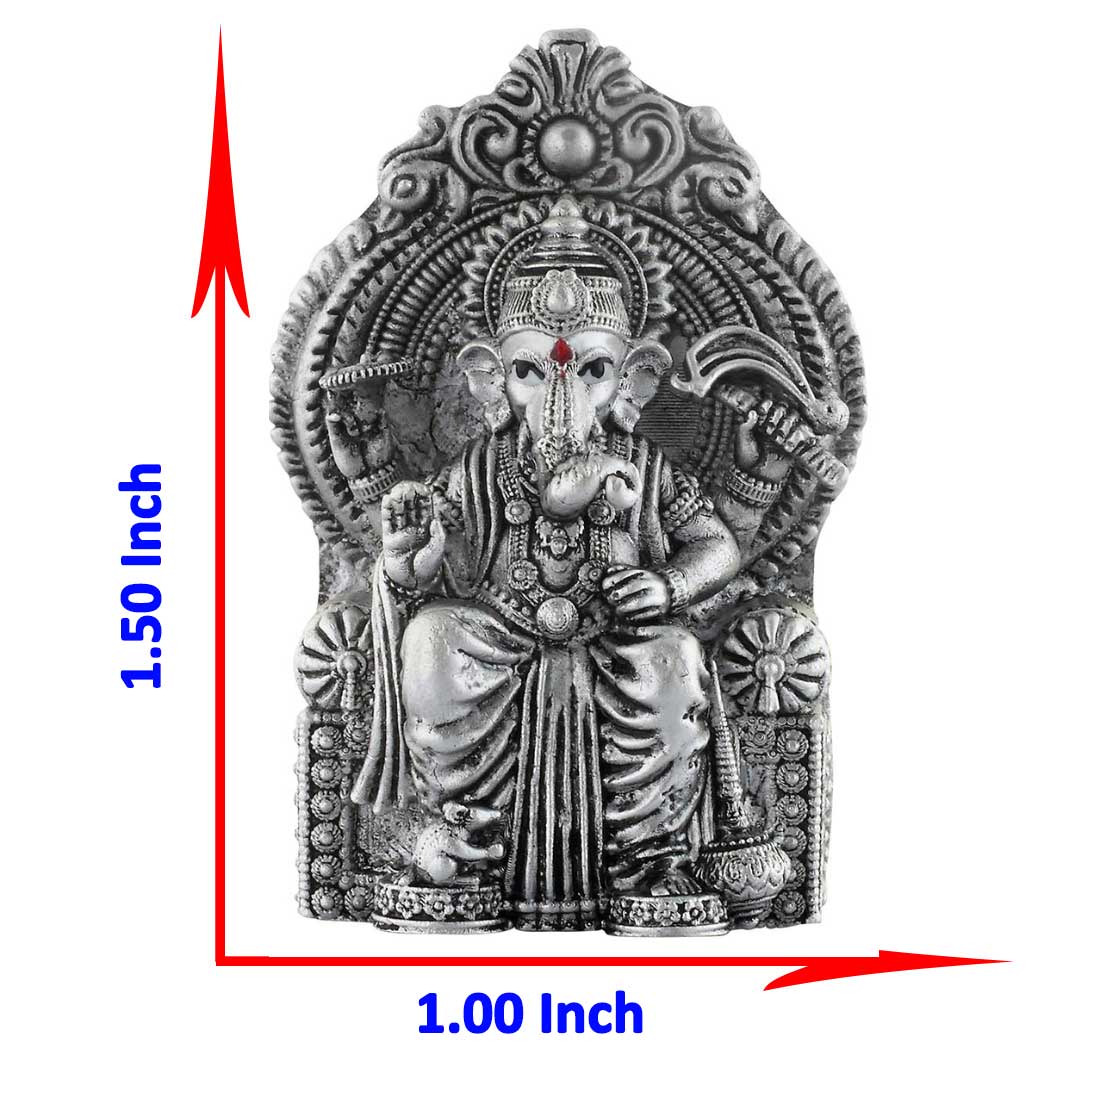 size of silver ganesh idol